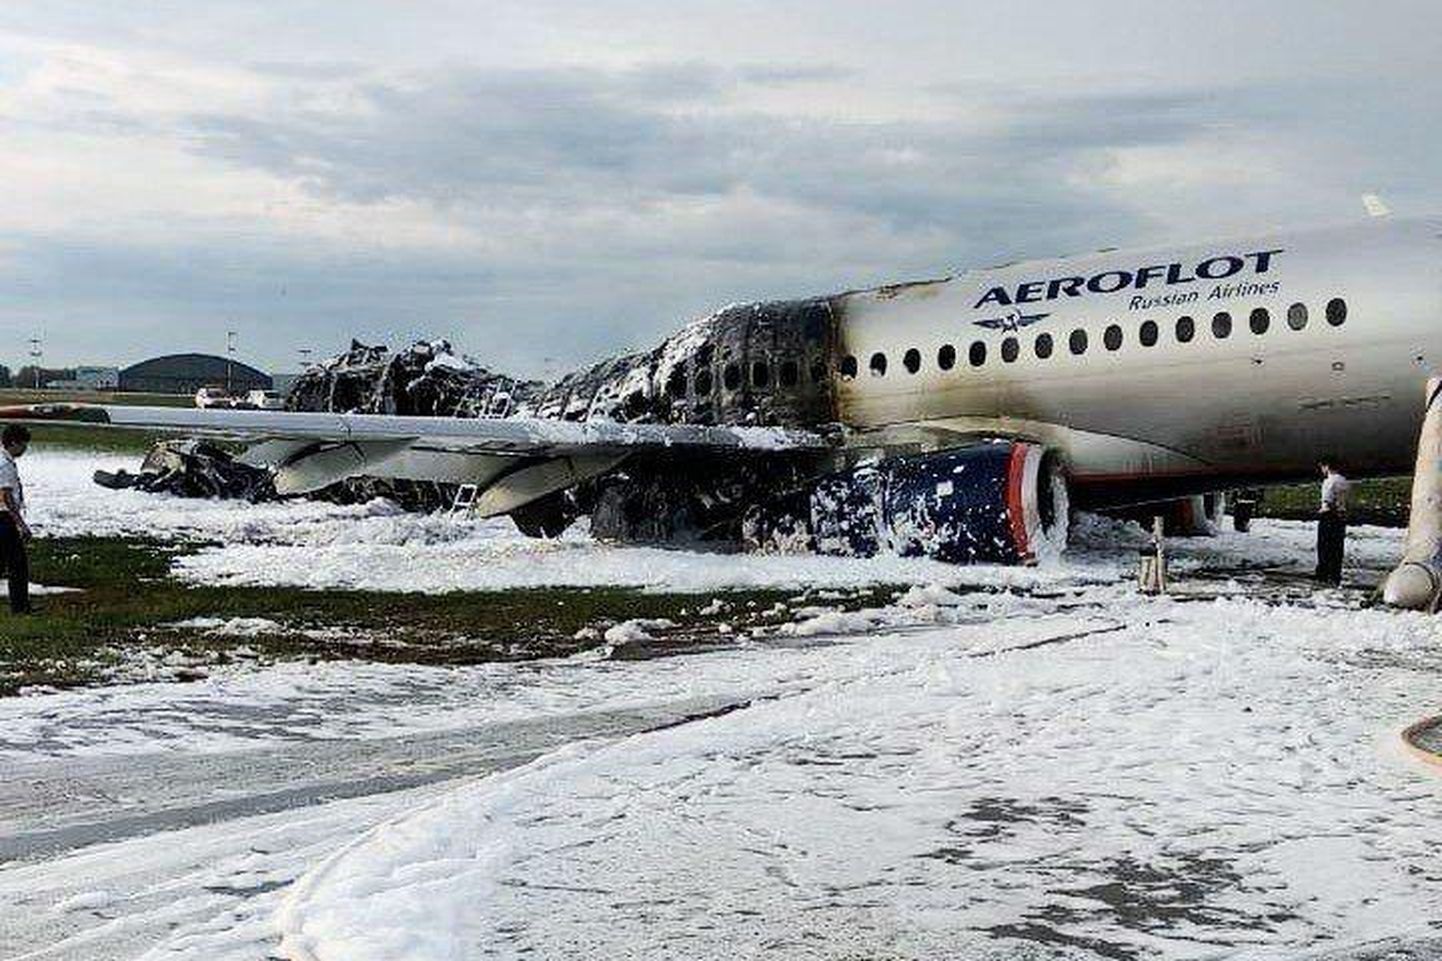 Tulemöllus raskelt kahjustada saanud Suhhoi Superjet 100 Šeremetjevo lennujaama maandumisrajal. 